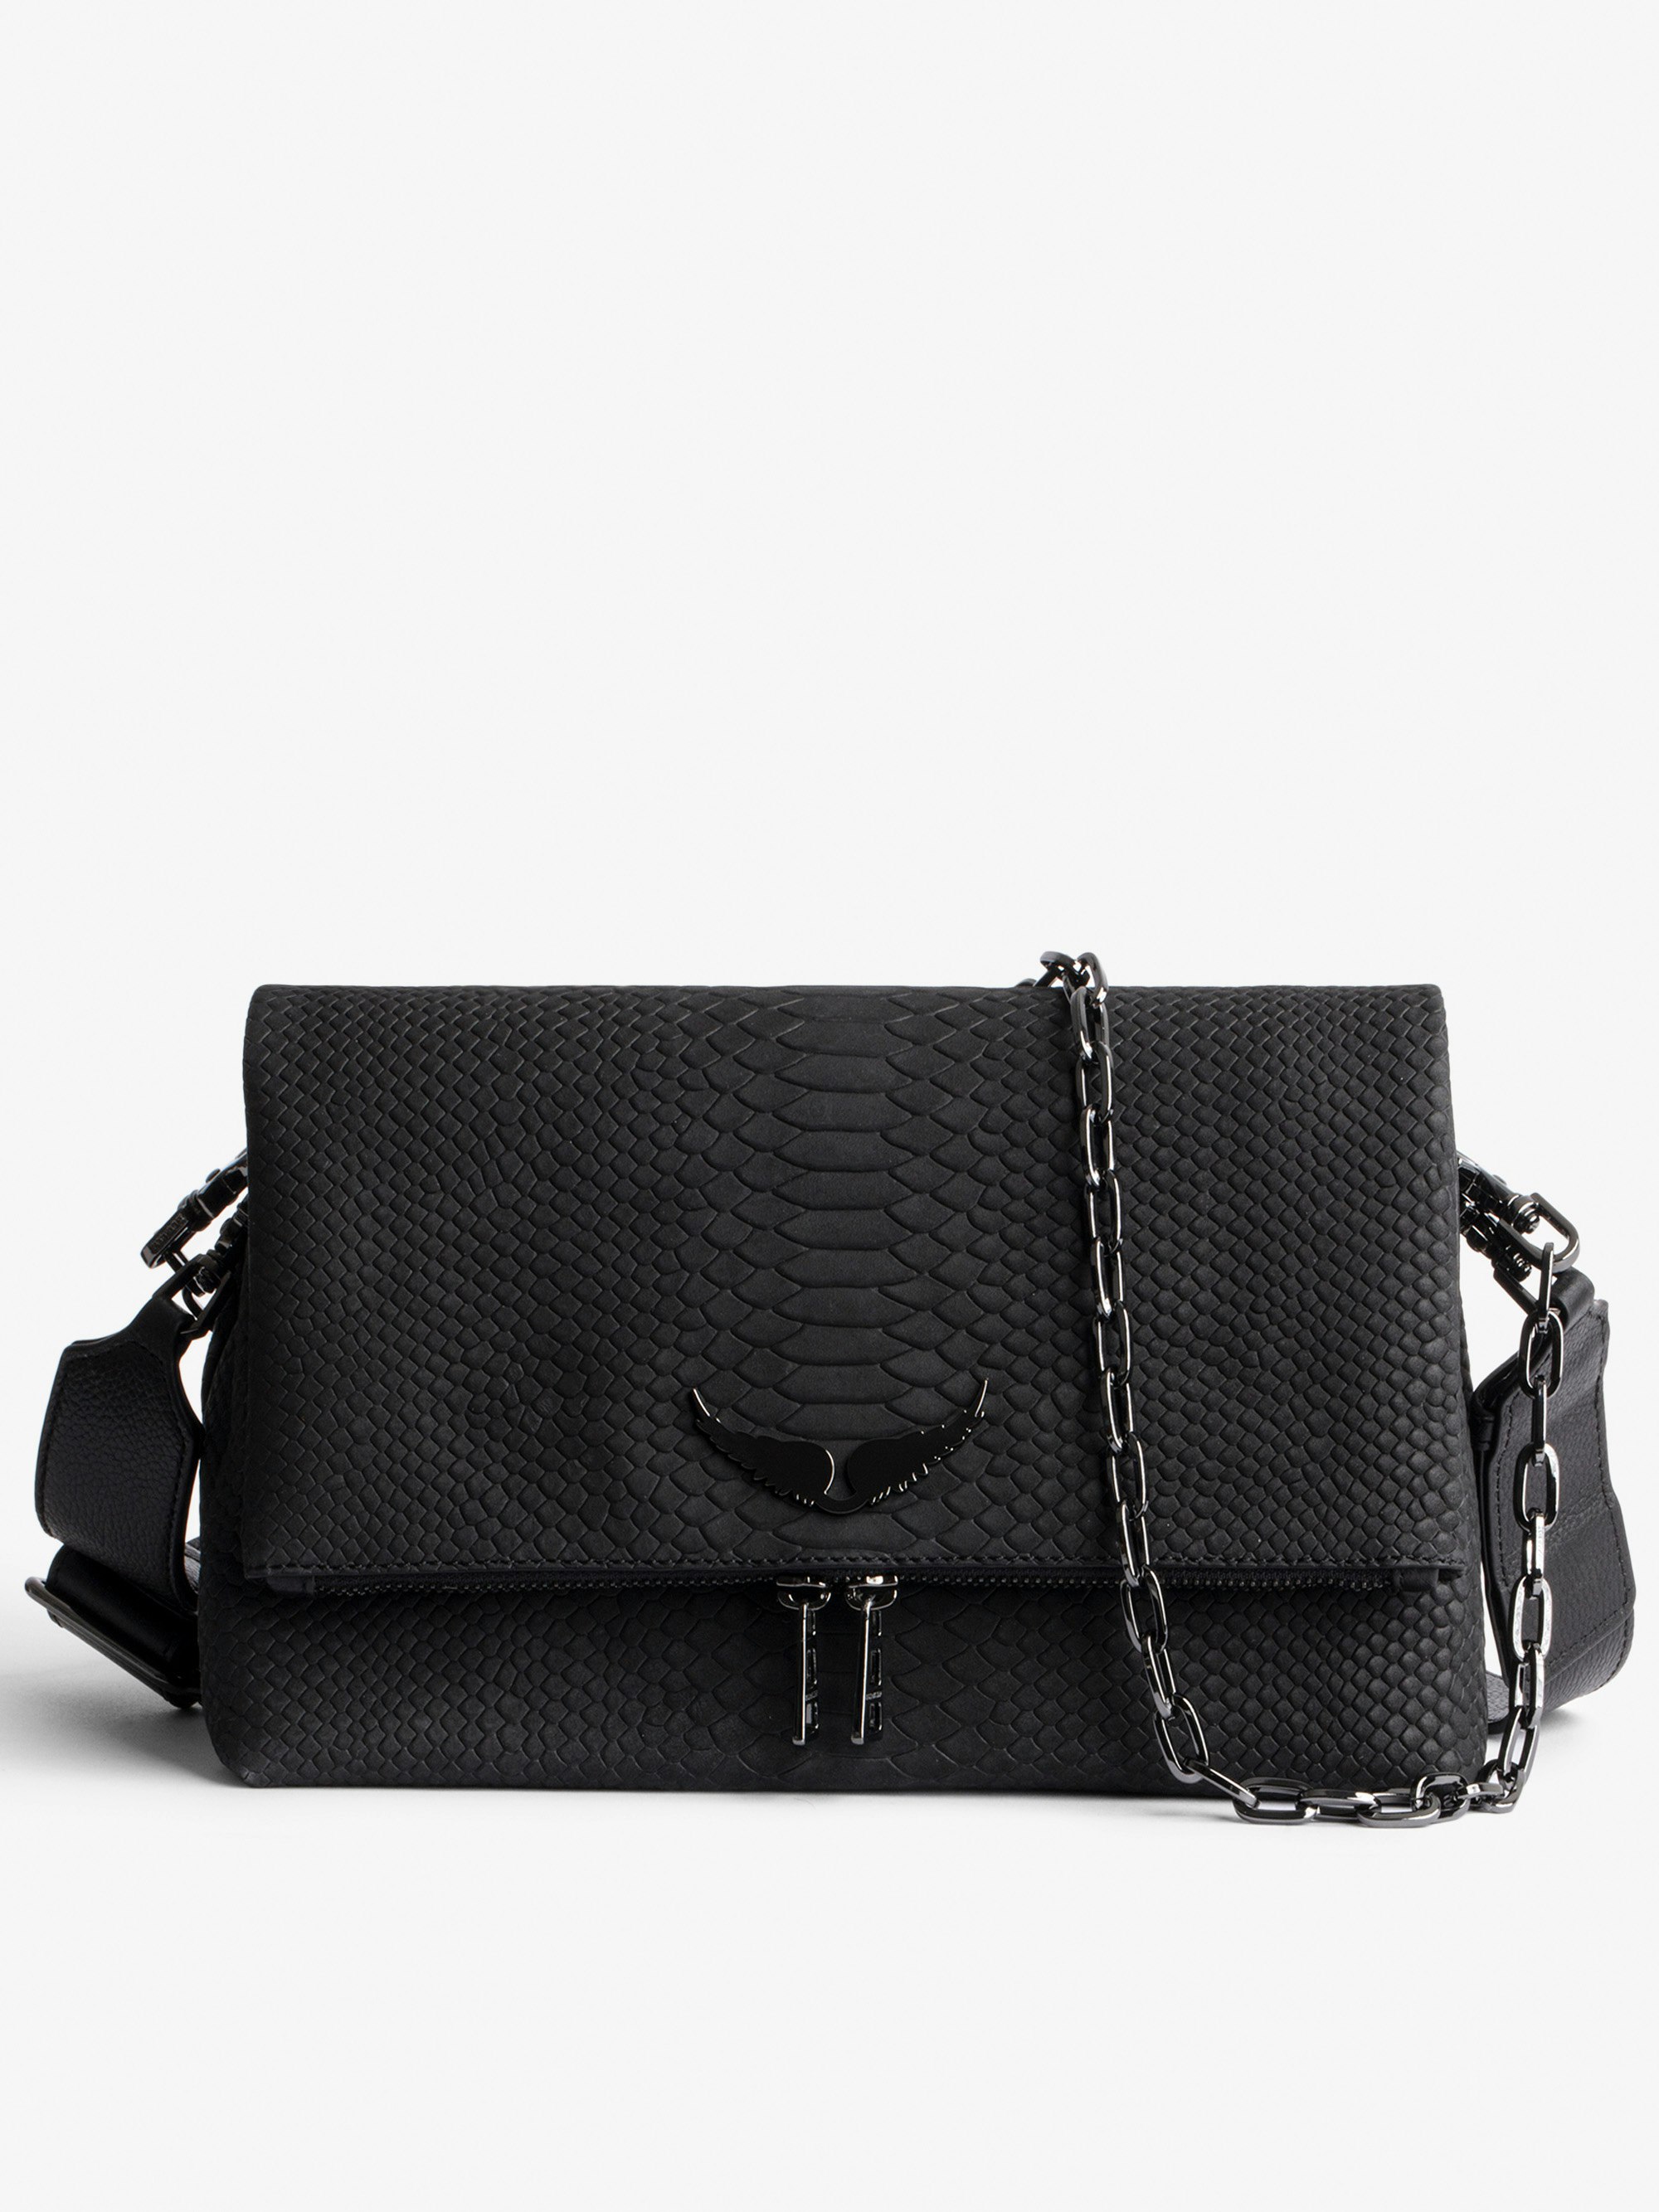 Tasche Rocky Soft Savage - Damen-Handtasche aus schwarzem Leder in Python-Optik mit Ketten-Schulterriemen